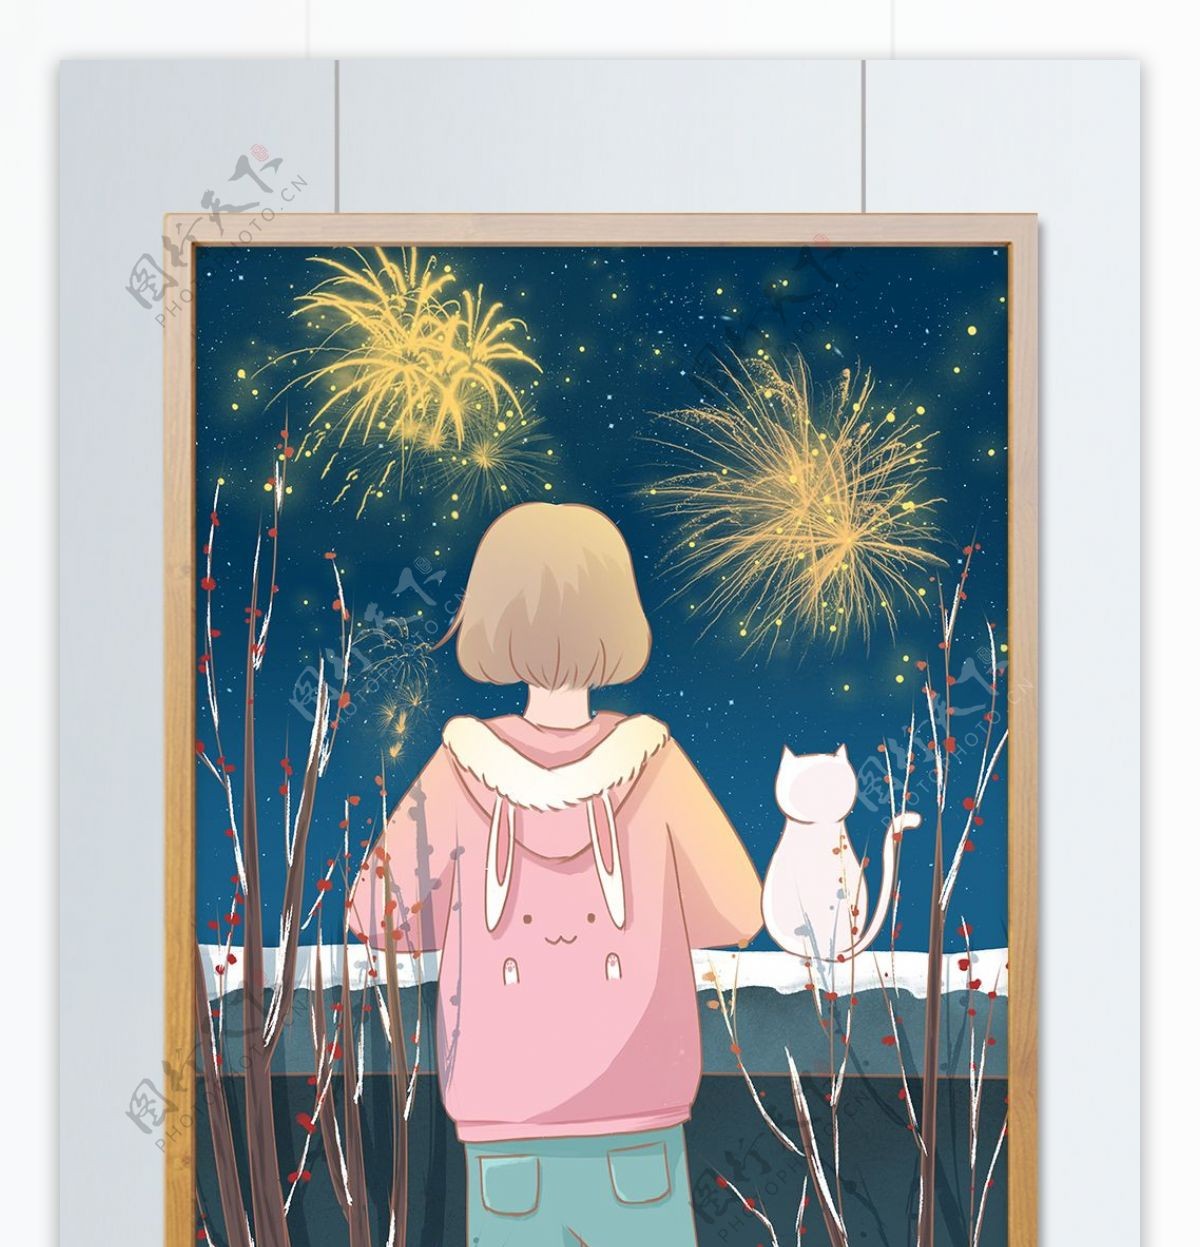 元旦快乐插画趴在墙头看烟花的女孩和小猫